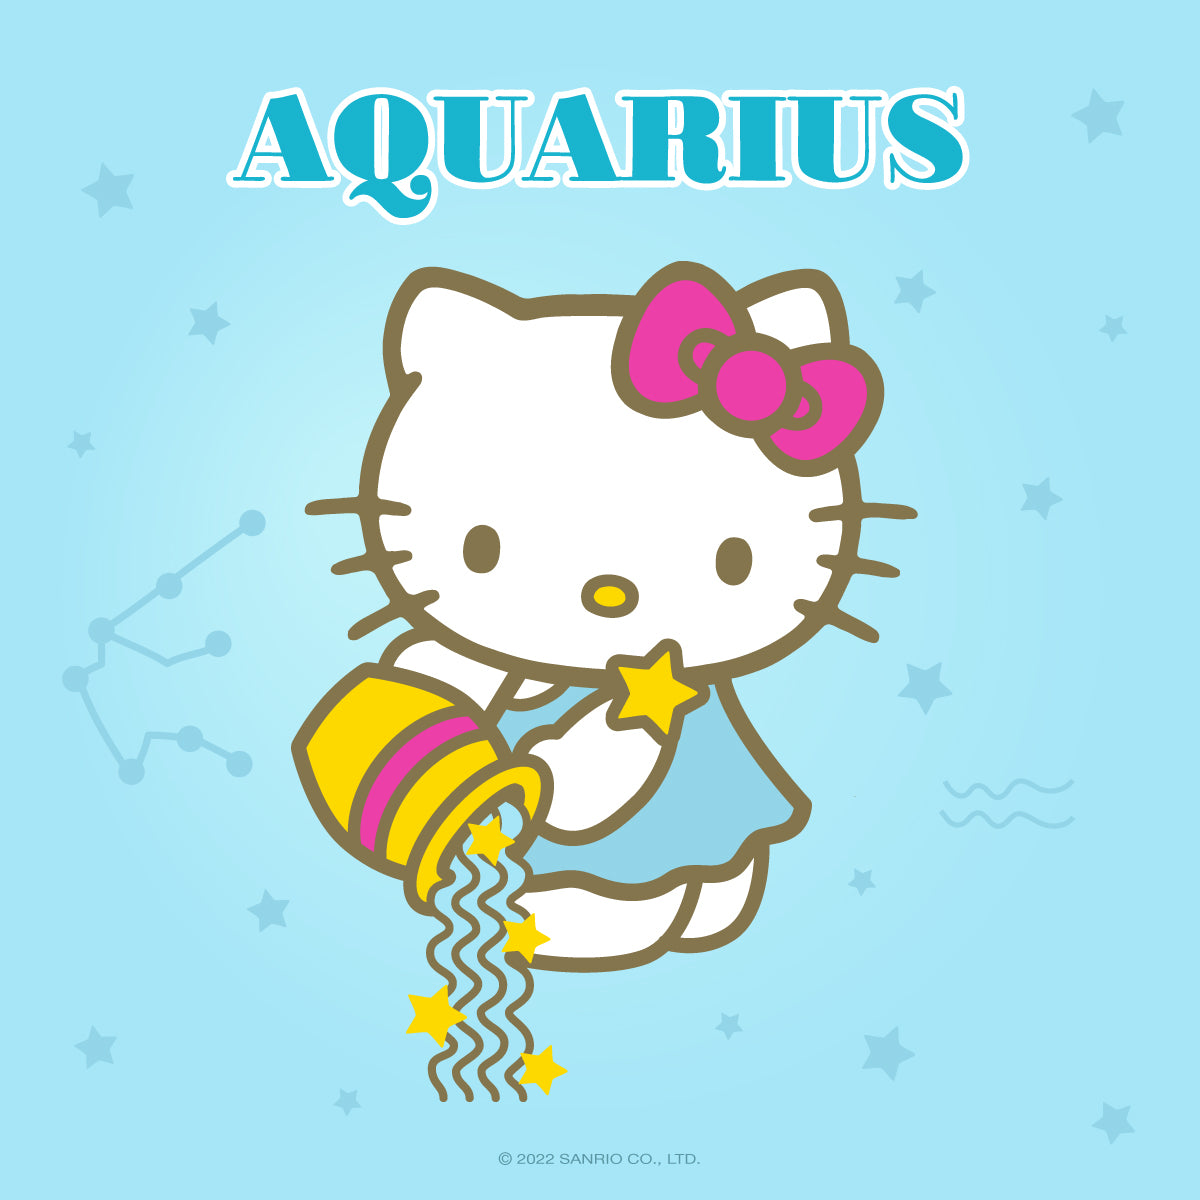 Aquarius Season